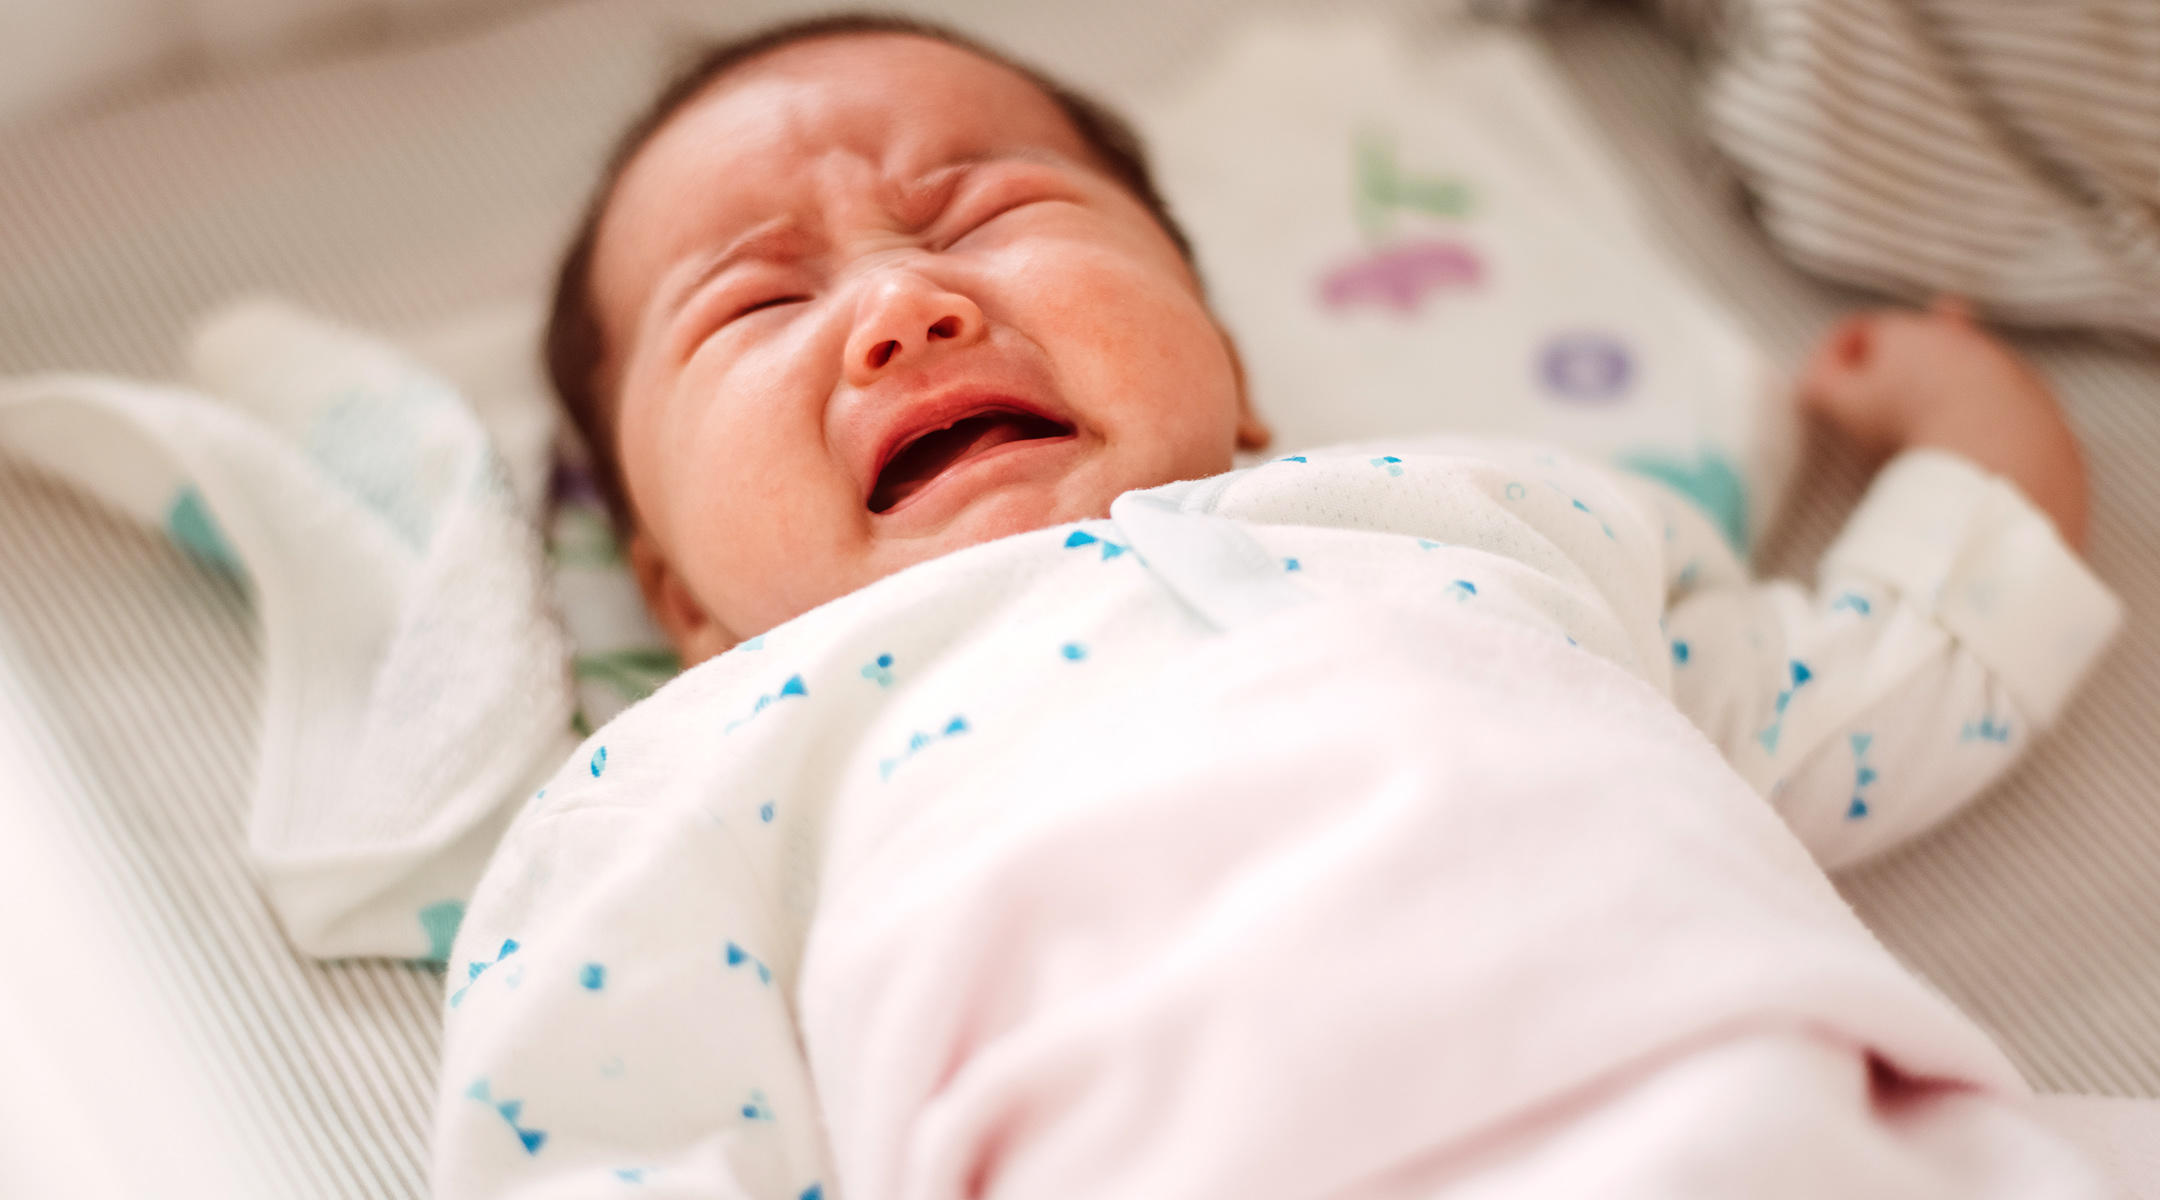 Alergi Susu Boleh Terjadi Walaupun Bayi Menyusu Badan 8 Tanda Ibu Mesti Alert